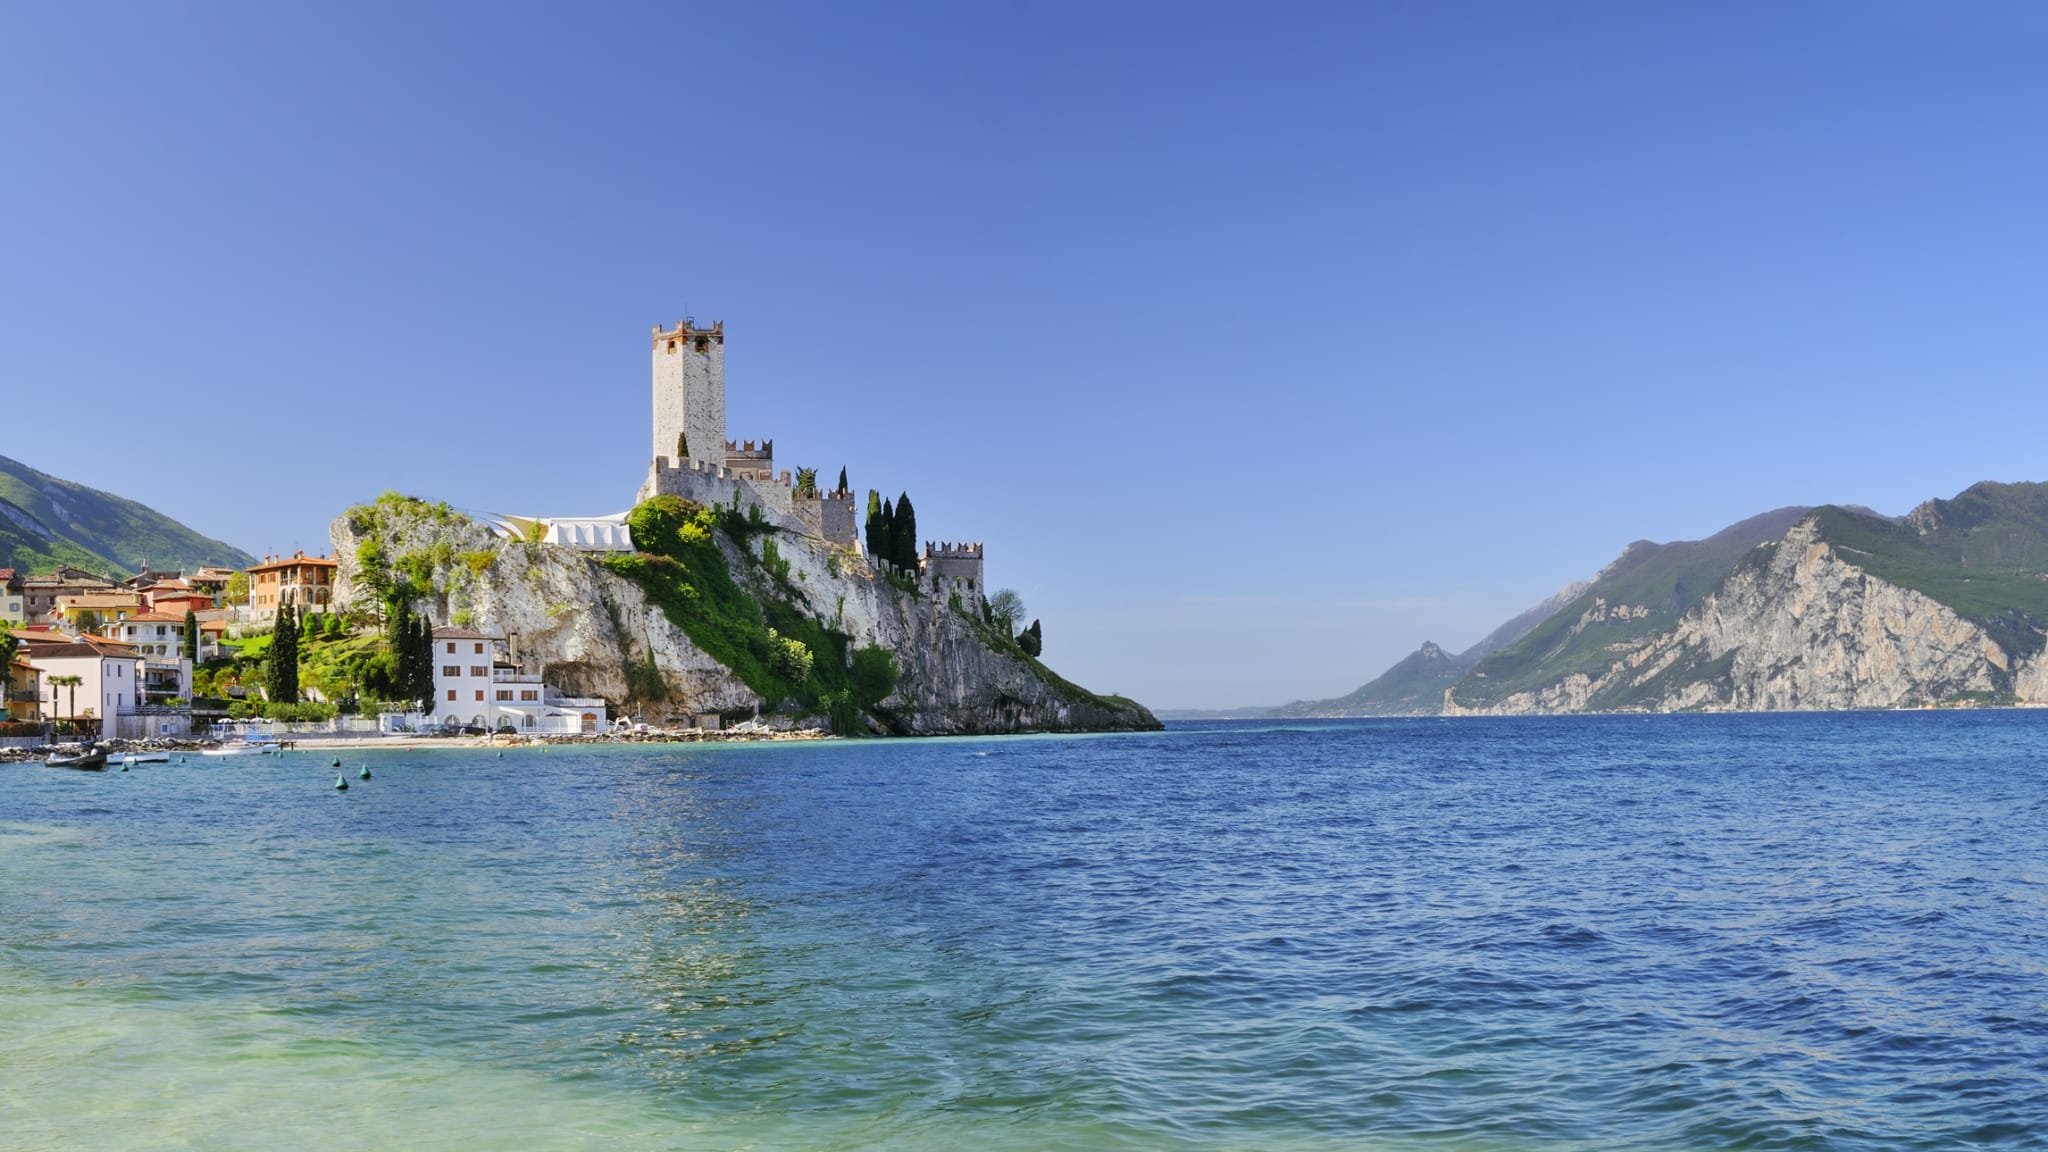 Panoramablick auf das Schloss von Malcesine aus dem 14. Jahrhundert am Gardasee © iStock.com/AlbertoSimonetti